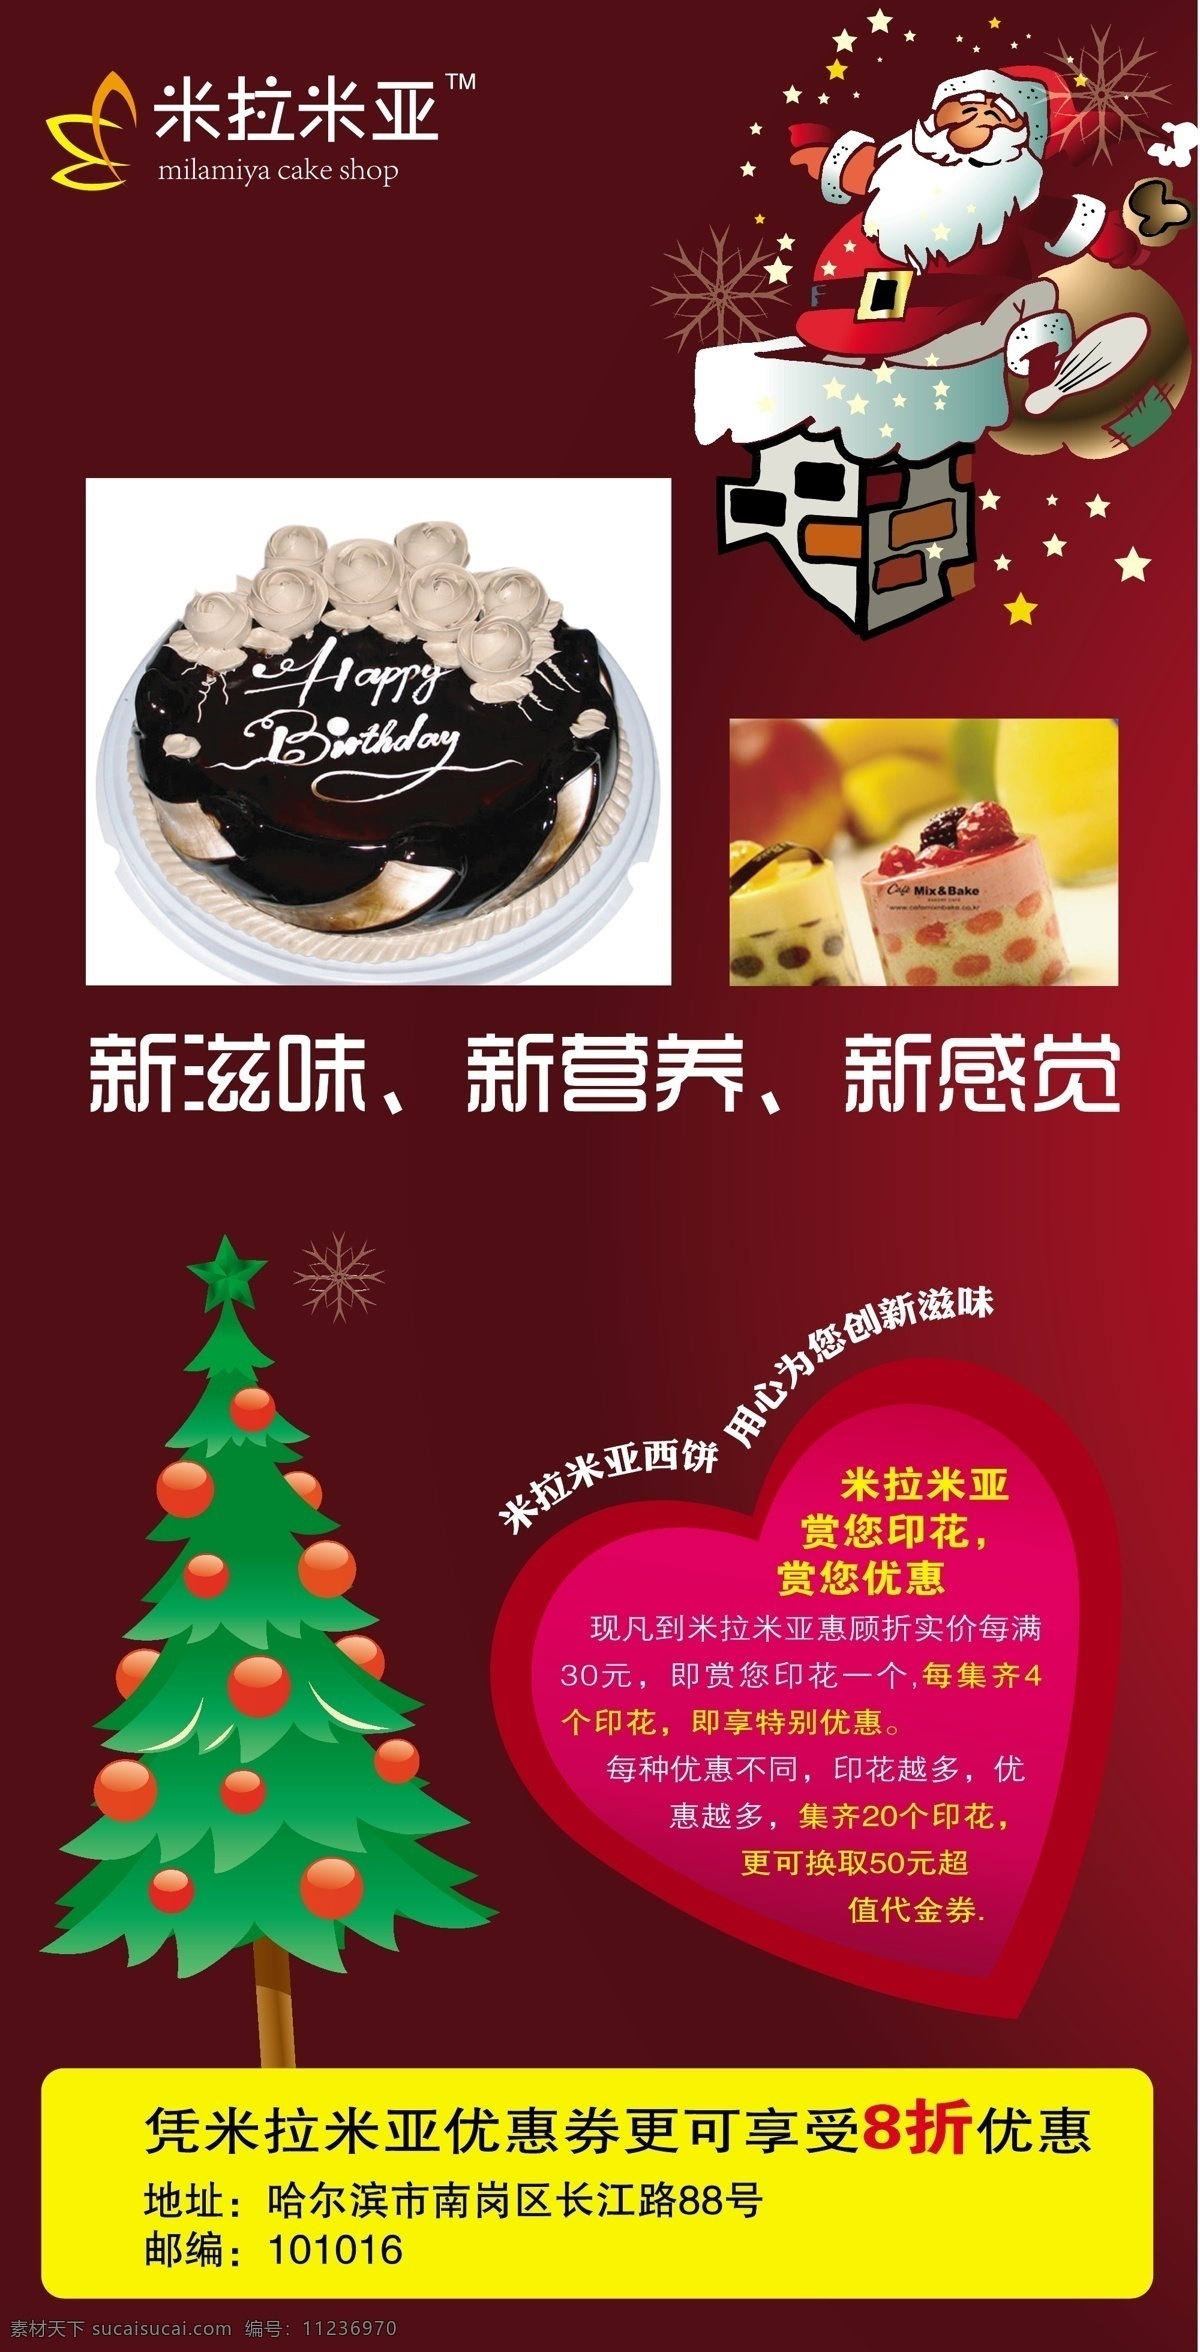 圣诞 宣传海报 蛋糕 节日素材 圣诞节 圣诞宣传海报 矢量 模板下载 海报 米拉米亚